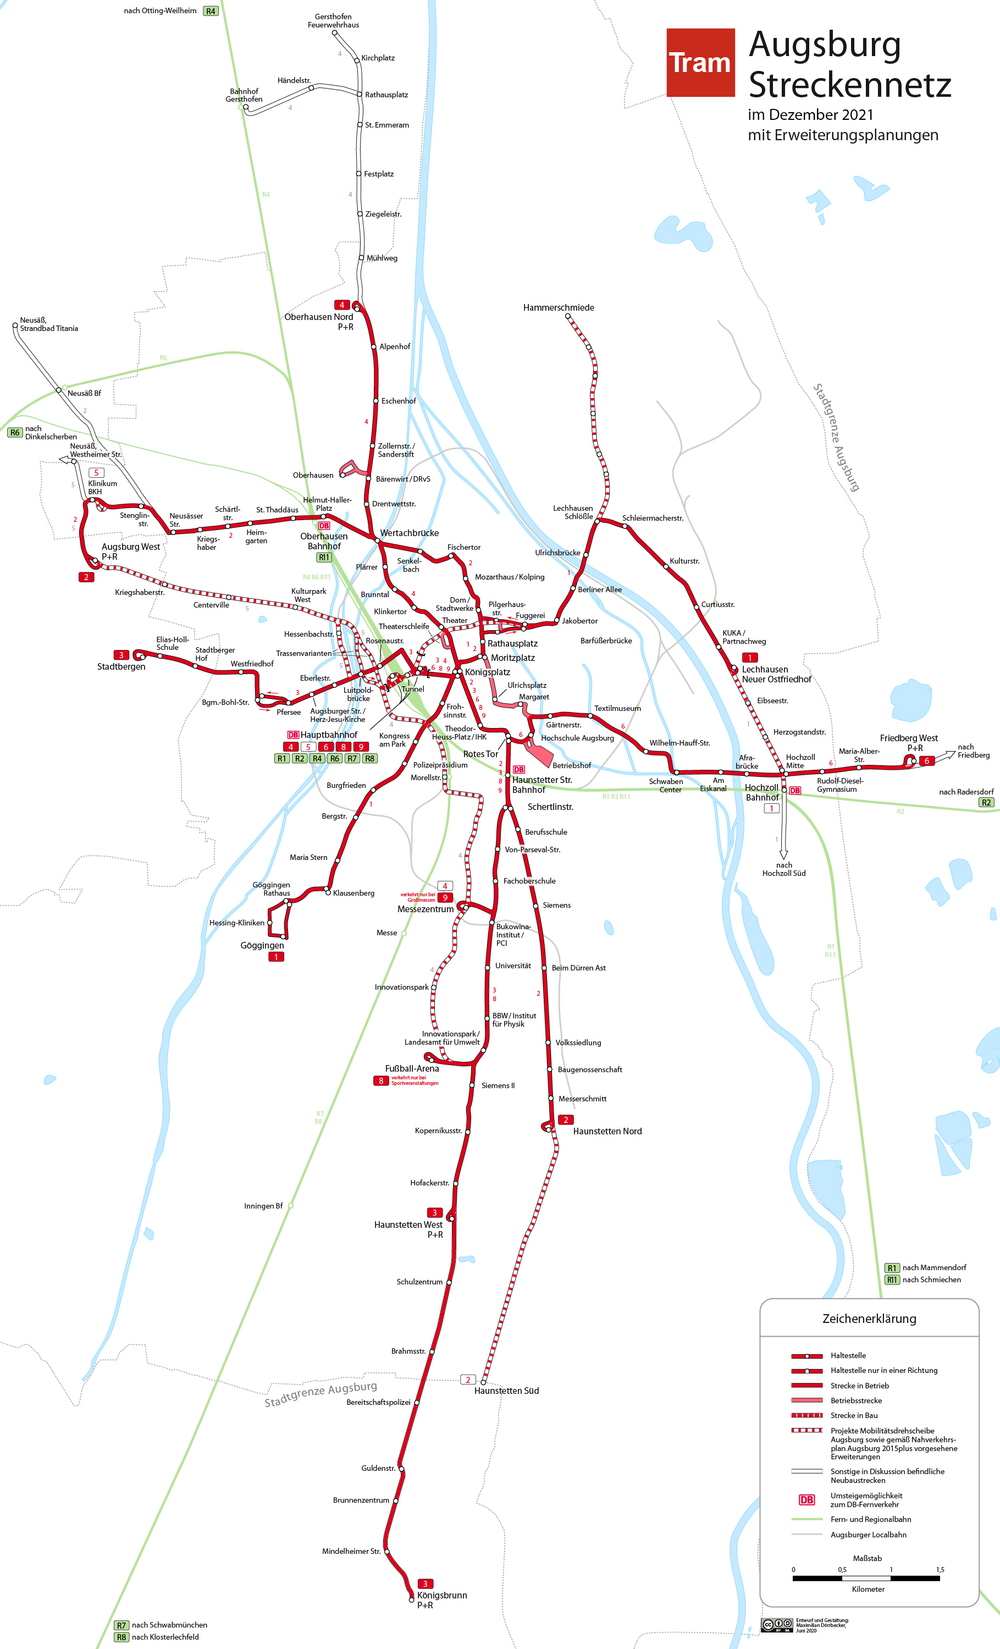 Ausschnitt aus dem ÖPNV-Netzplan für die kostenlose City-Zone in Augsburg ab 1. Januar 2020 mit den beiden Zentralhaltestellen Königsplatz und Moritzplatz und den direkt angrenzenden (+ 1) Straßenbahn- und Bushaltestellen, etwa auch den Hauptbahnhof der auch nur eine Haltestelle vom Kö entfernt liegt.